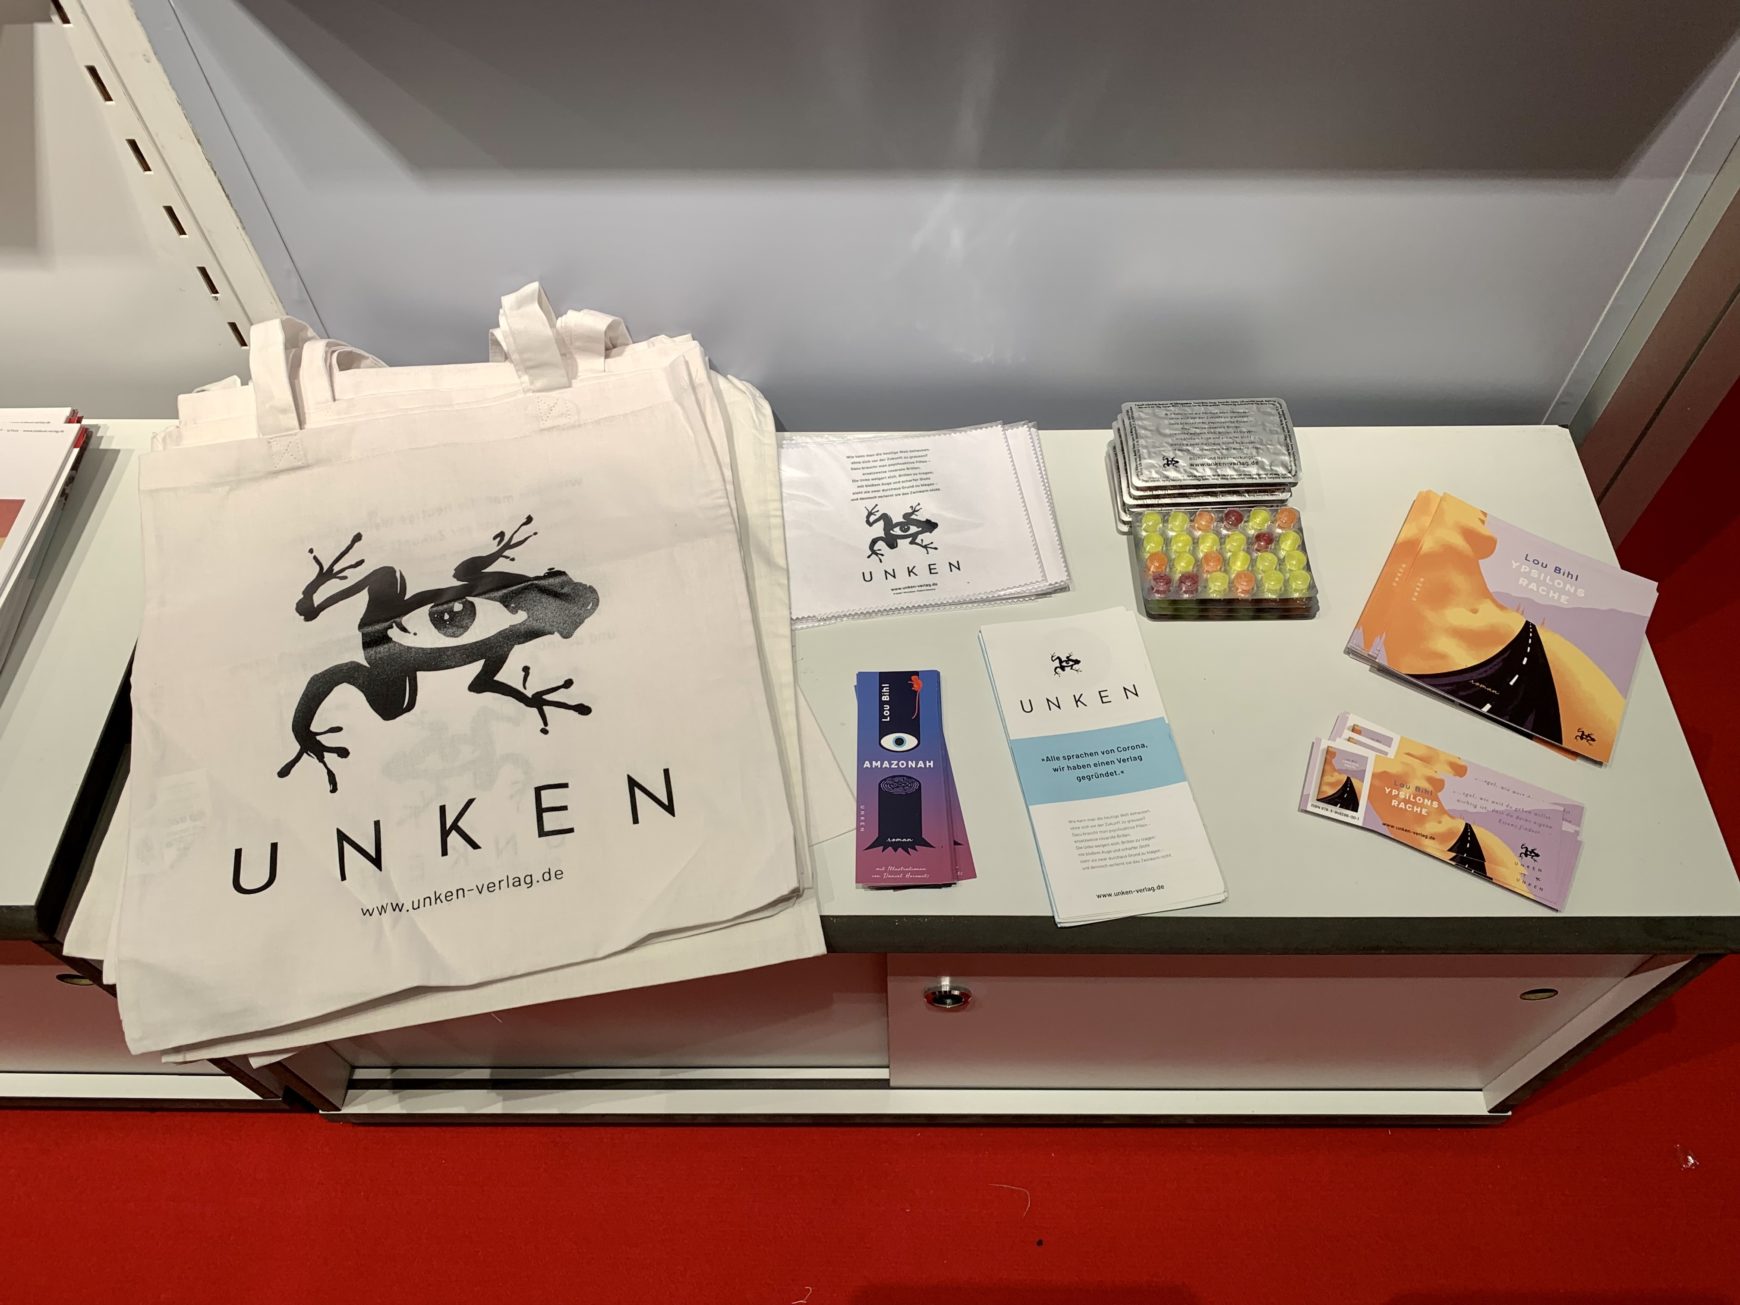 Buchmesse 2022 Unken Verlag 5 - Aktuelles - Buchmesse, Unken Verlag